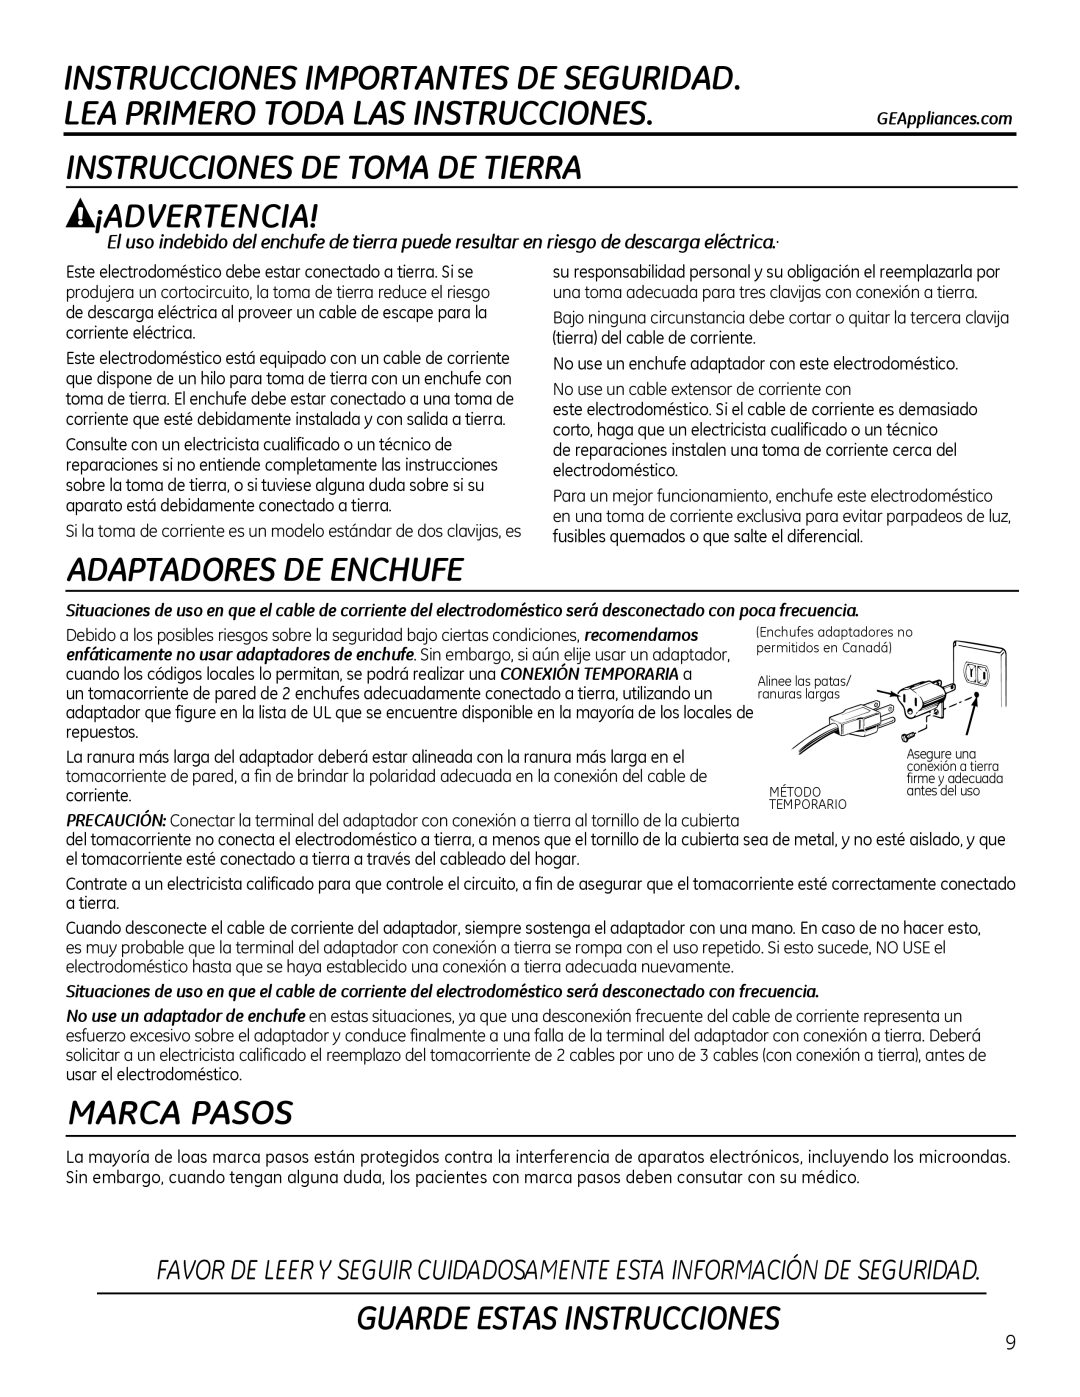 GE Microwave Oven owner manual Instrucciones De Toma De Tierra ¡Advertencia, Adaptadores De Enchufe, Marca Pasos 